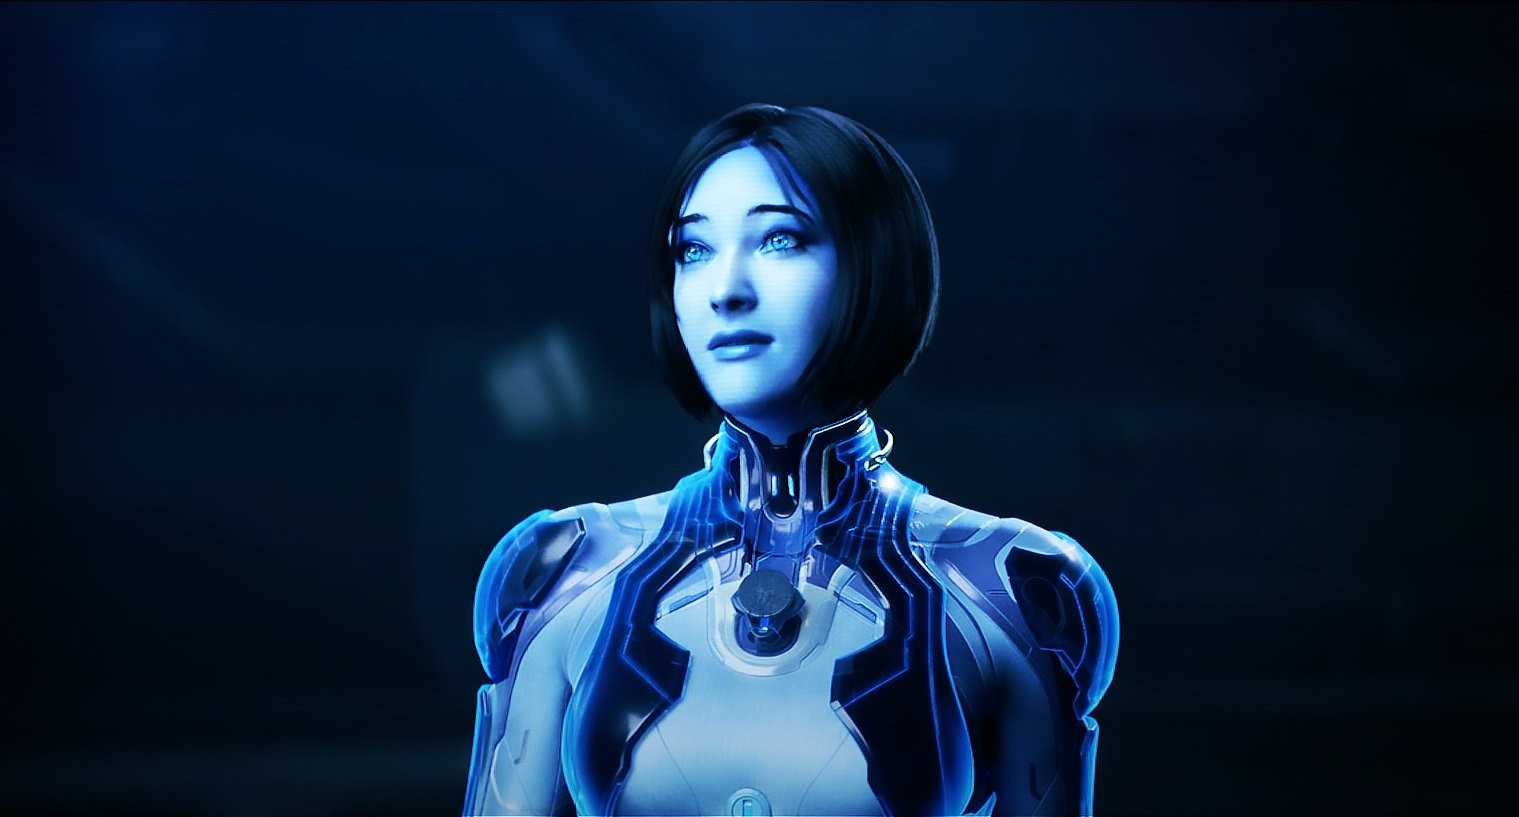 Halo  Série retoma filmagens e atriz da Cortana é substituída – Multverso  Geek